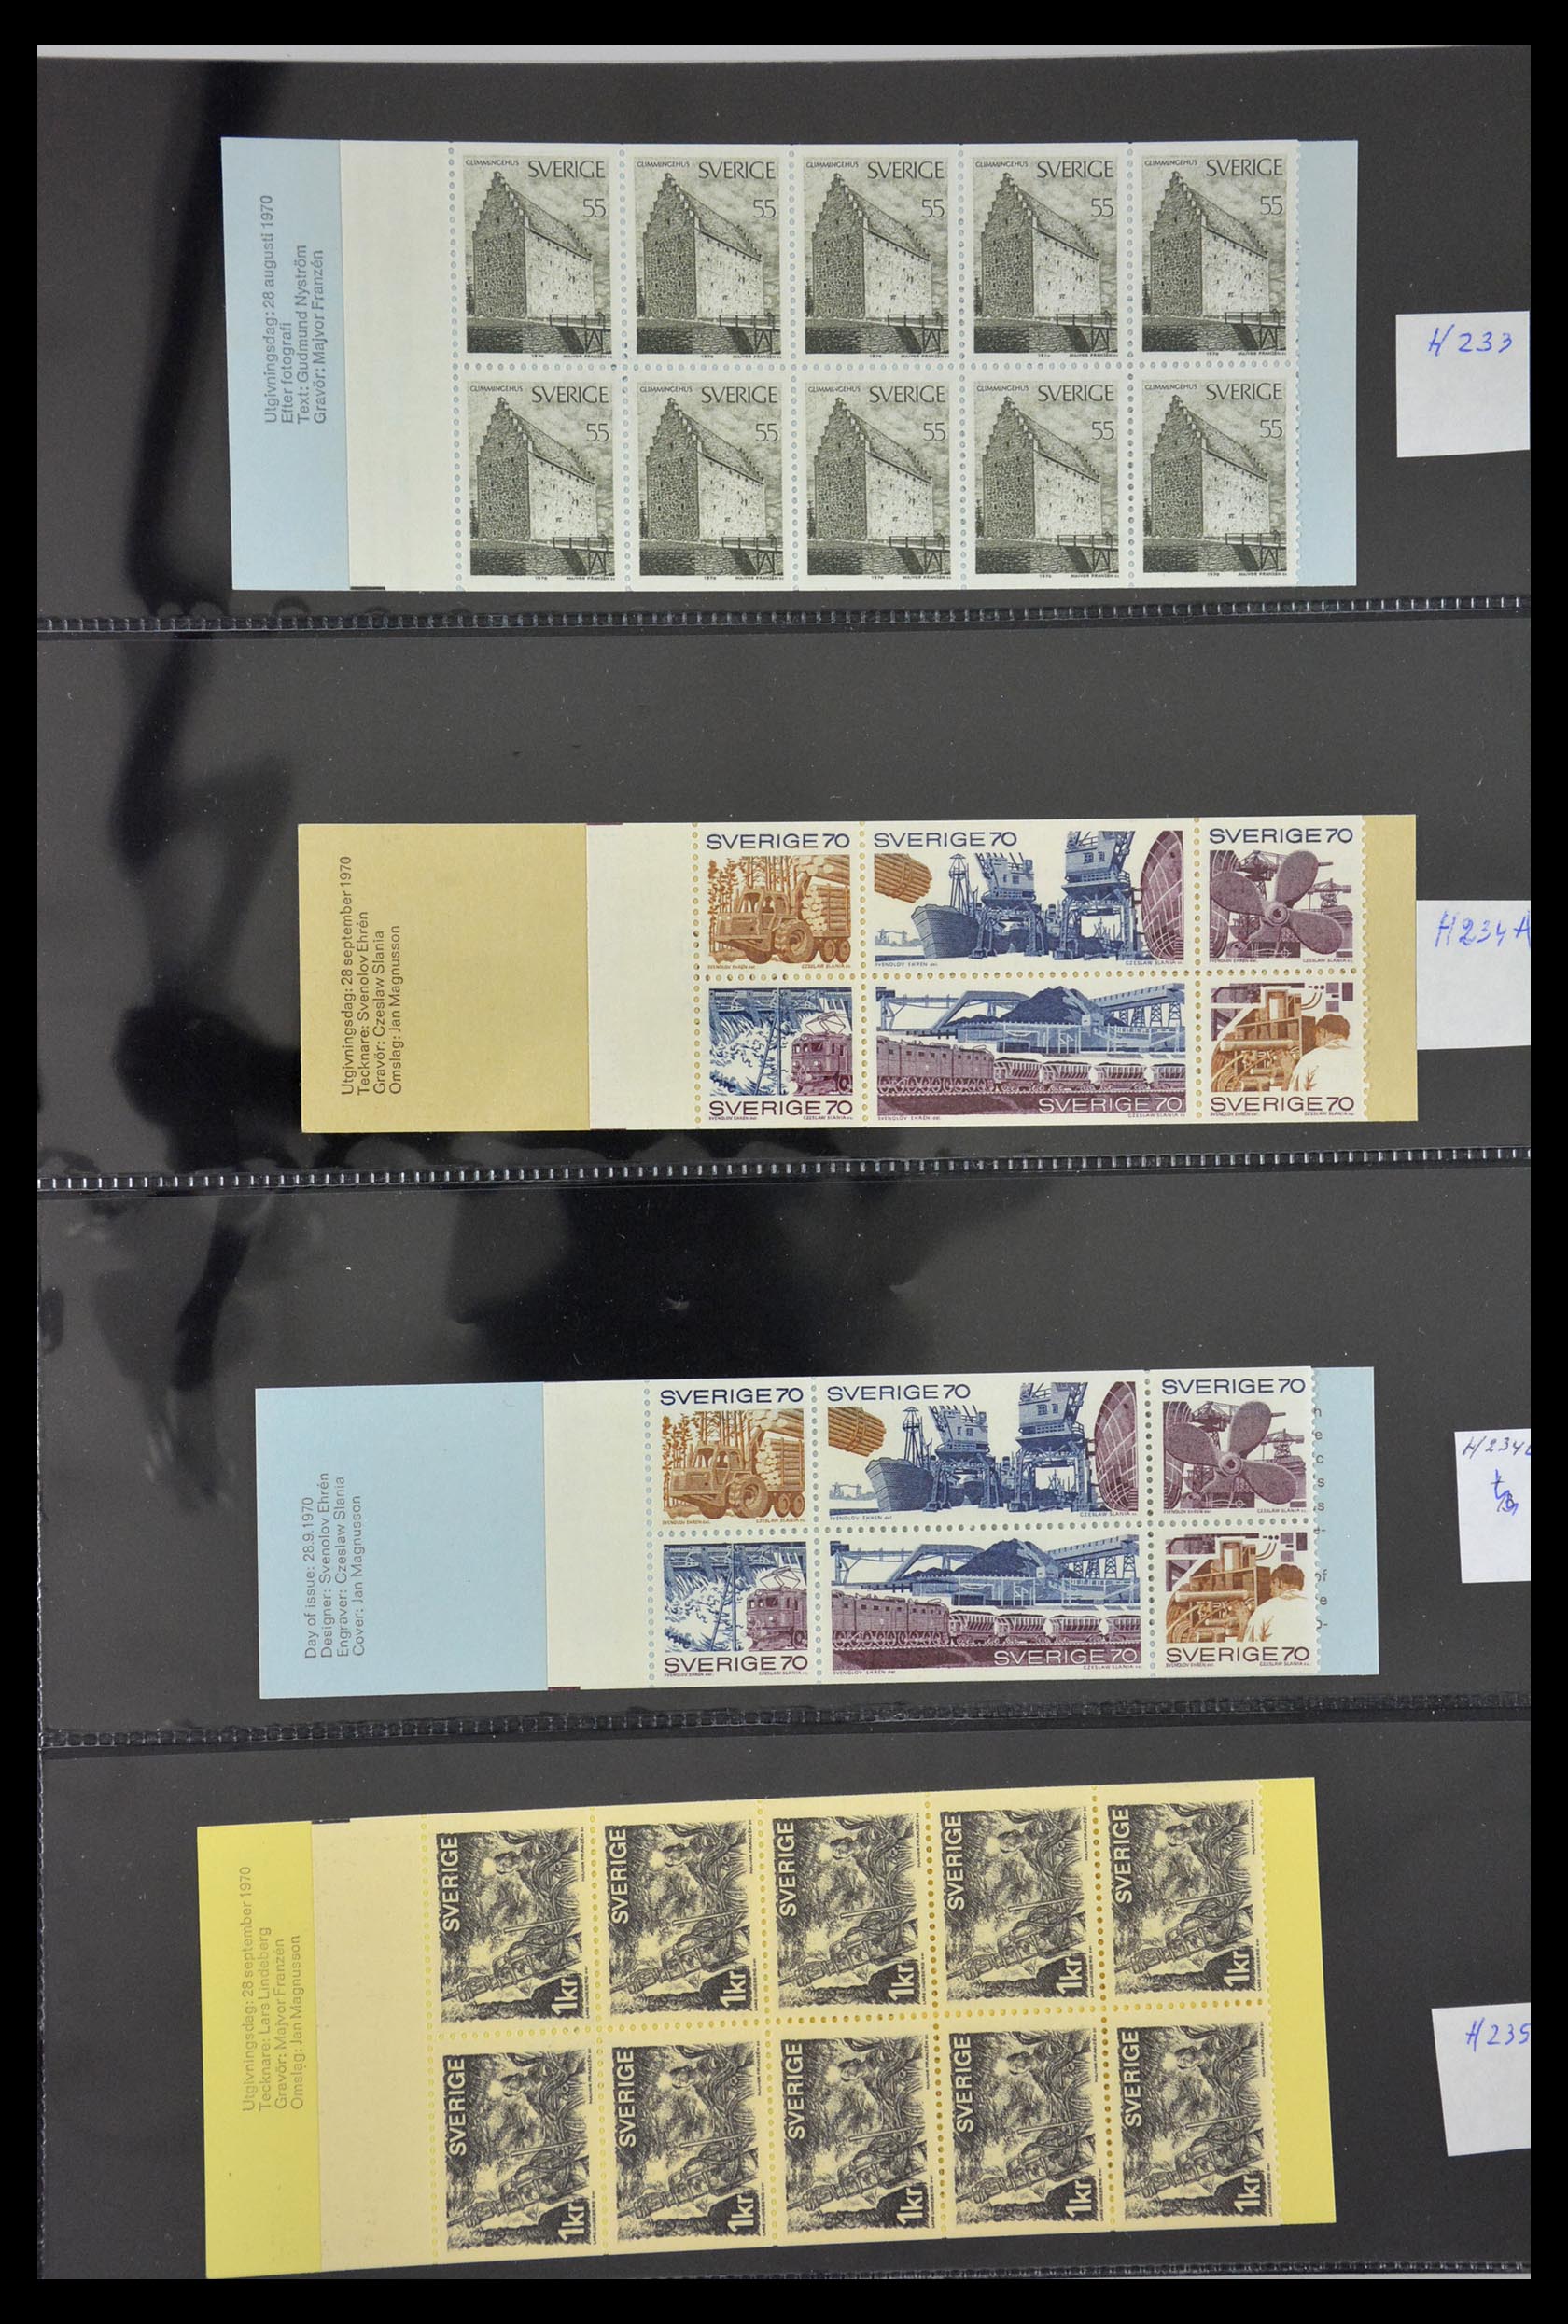 29368 053 - 29368 Sweden stamp booklets 1942-1996.